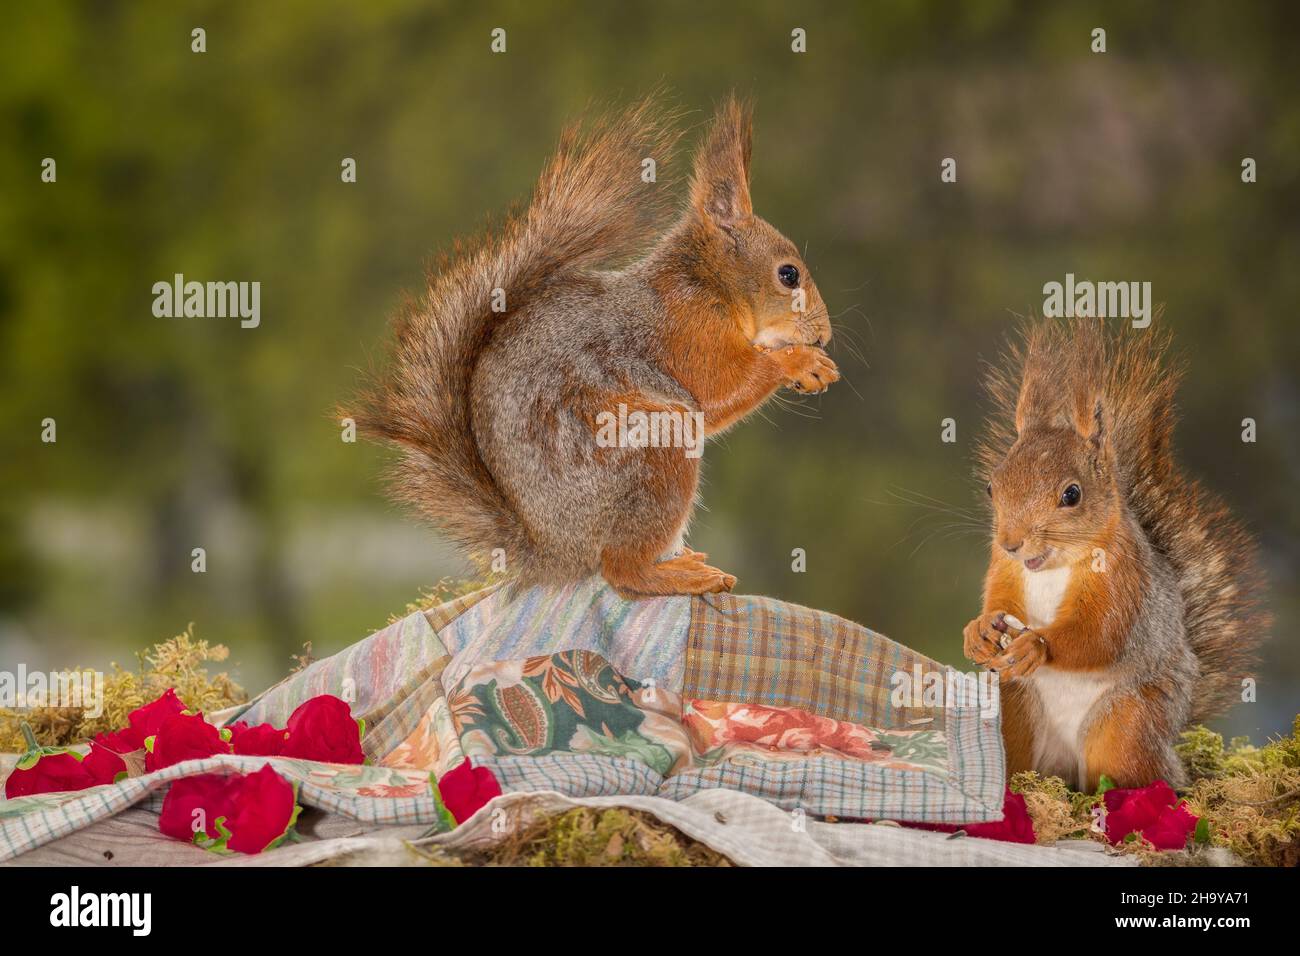 Rotes Eichhörnchen, das auf einem Tuch steht, und ein anderes Eichhörnchen, das daneben steht und Rosen um es herum hat Stockfoto